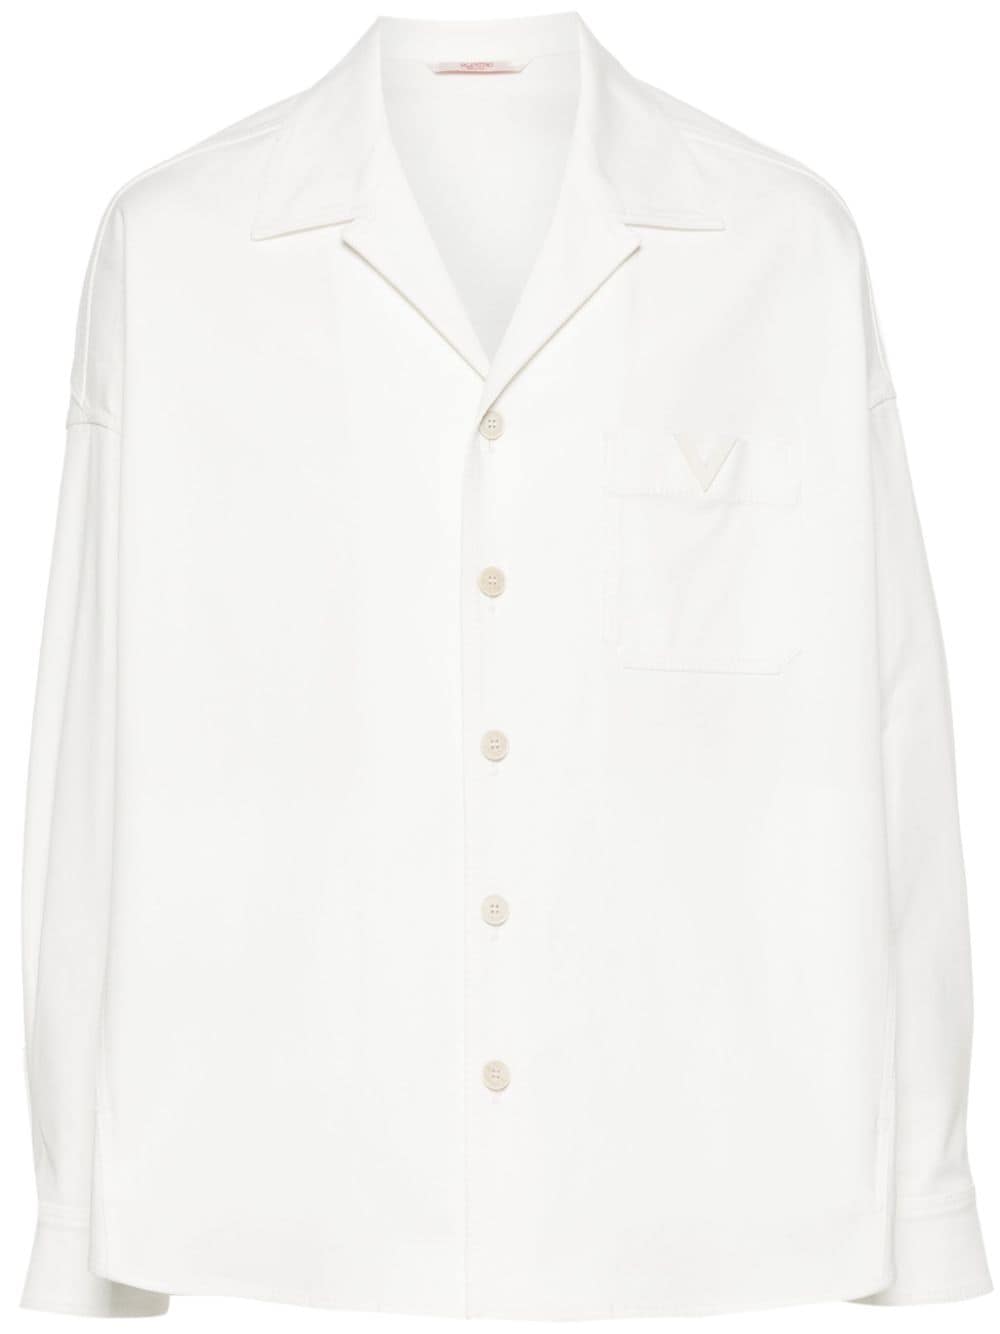 Giacca-camicia in tela con logo gommato<br><br><br>